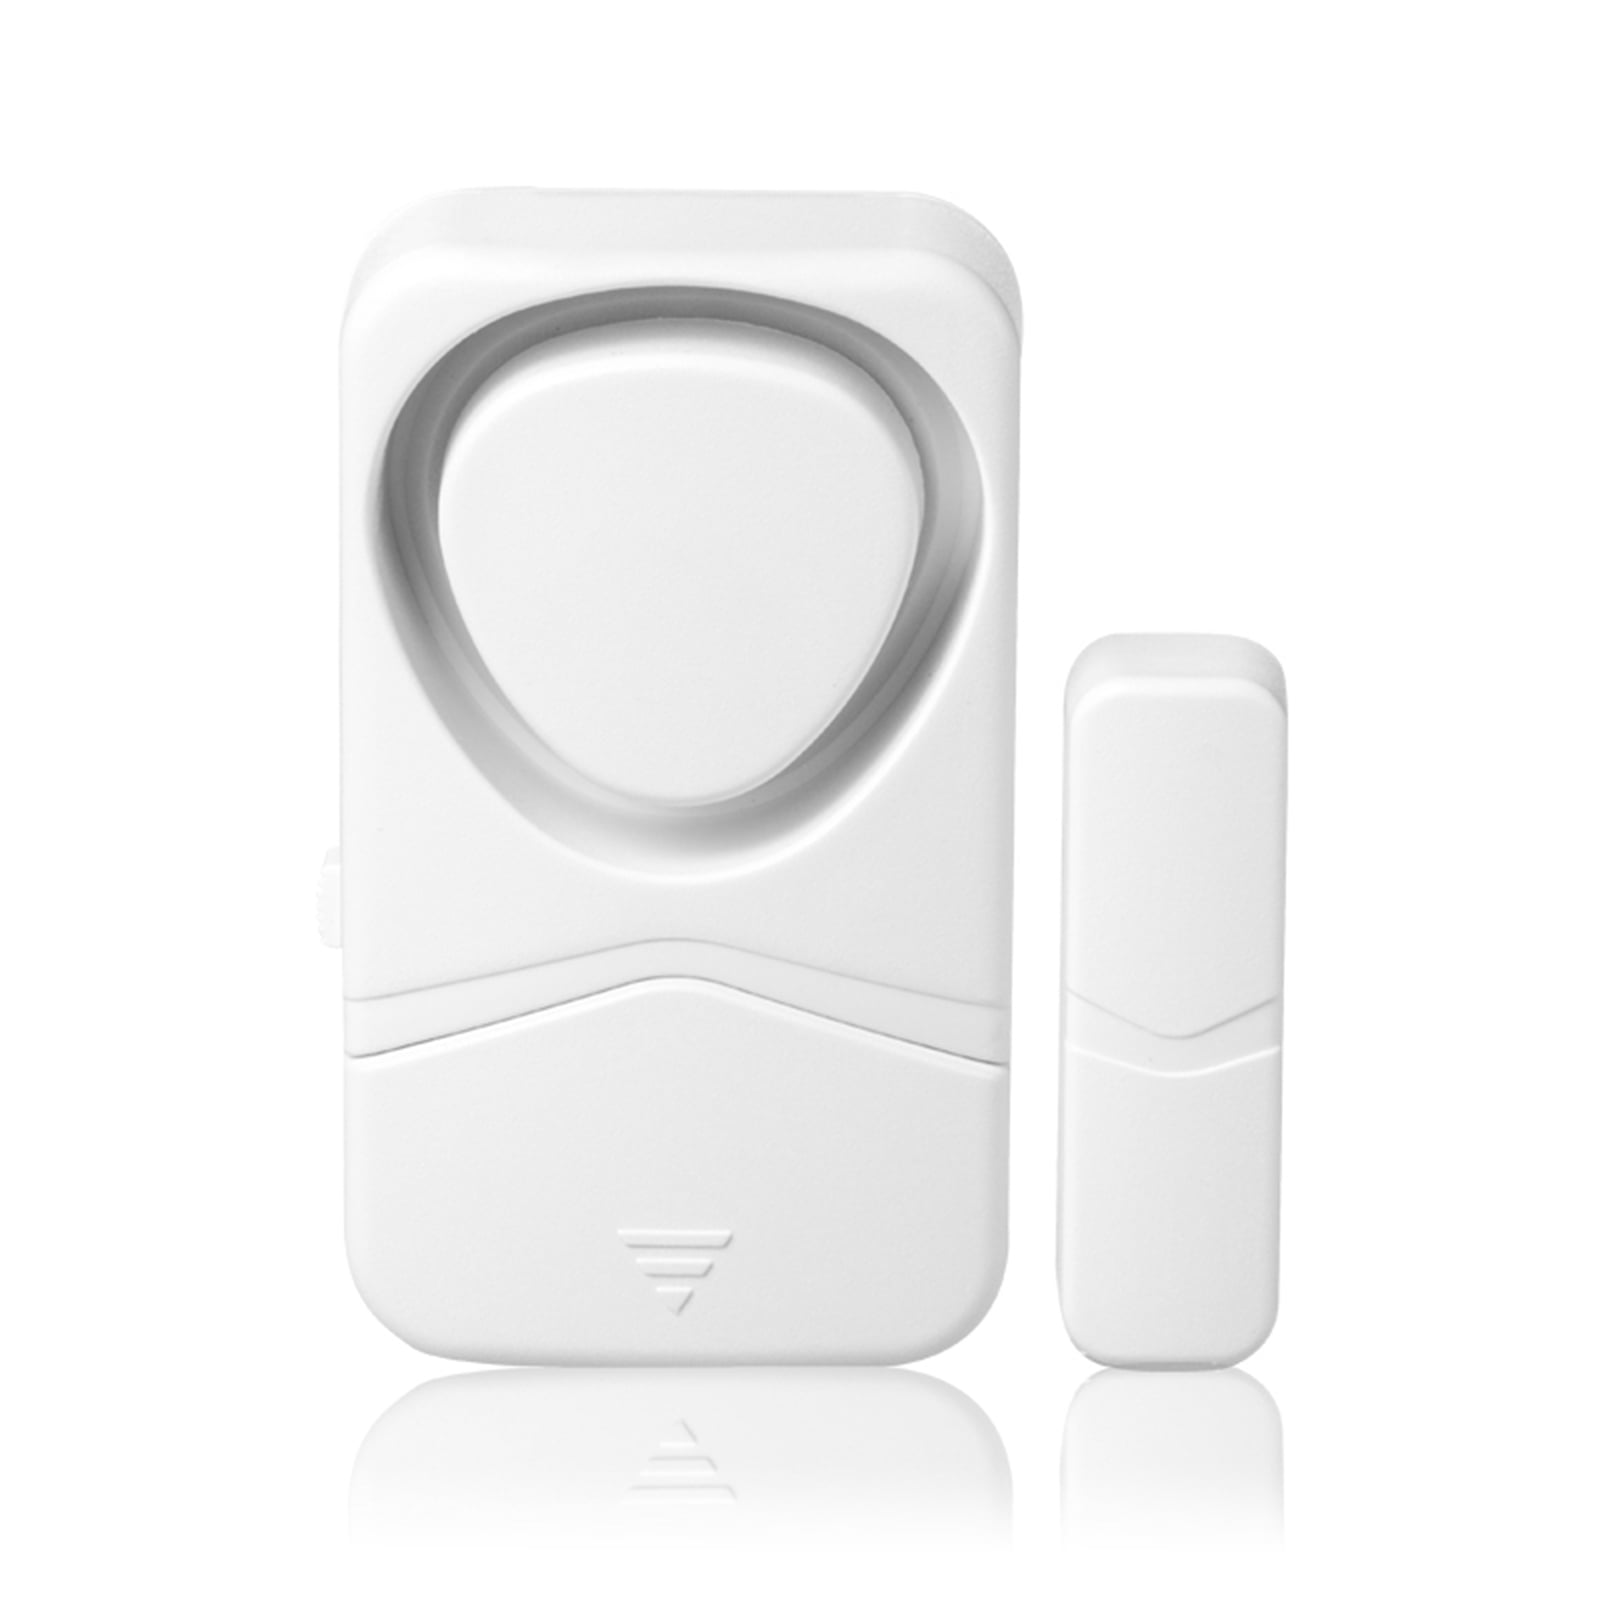 Details about   Wireless Window Door Open Chime Entry Security Alarm Doorbell Magnetic Sensor 